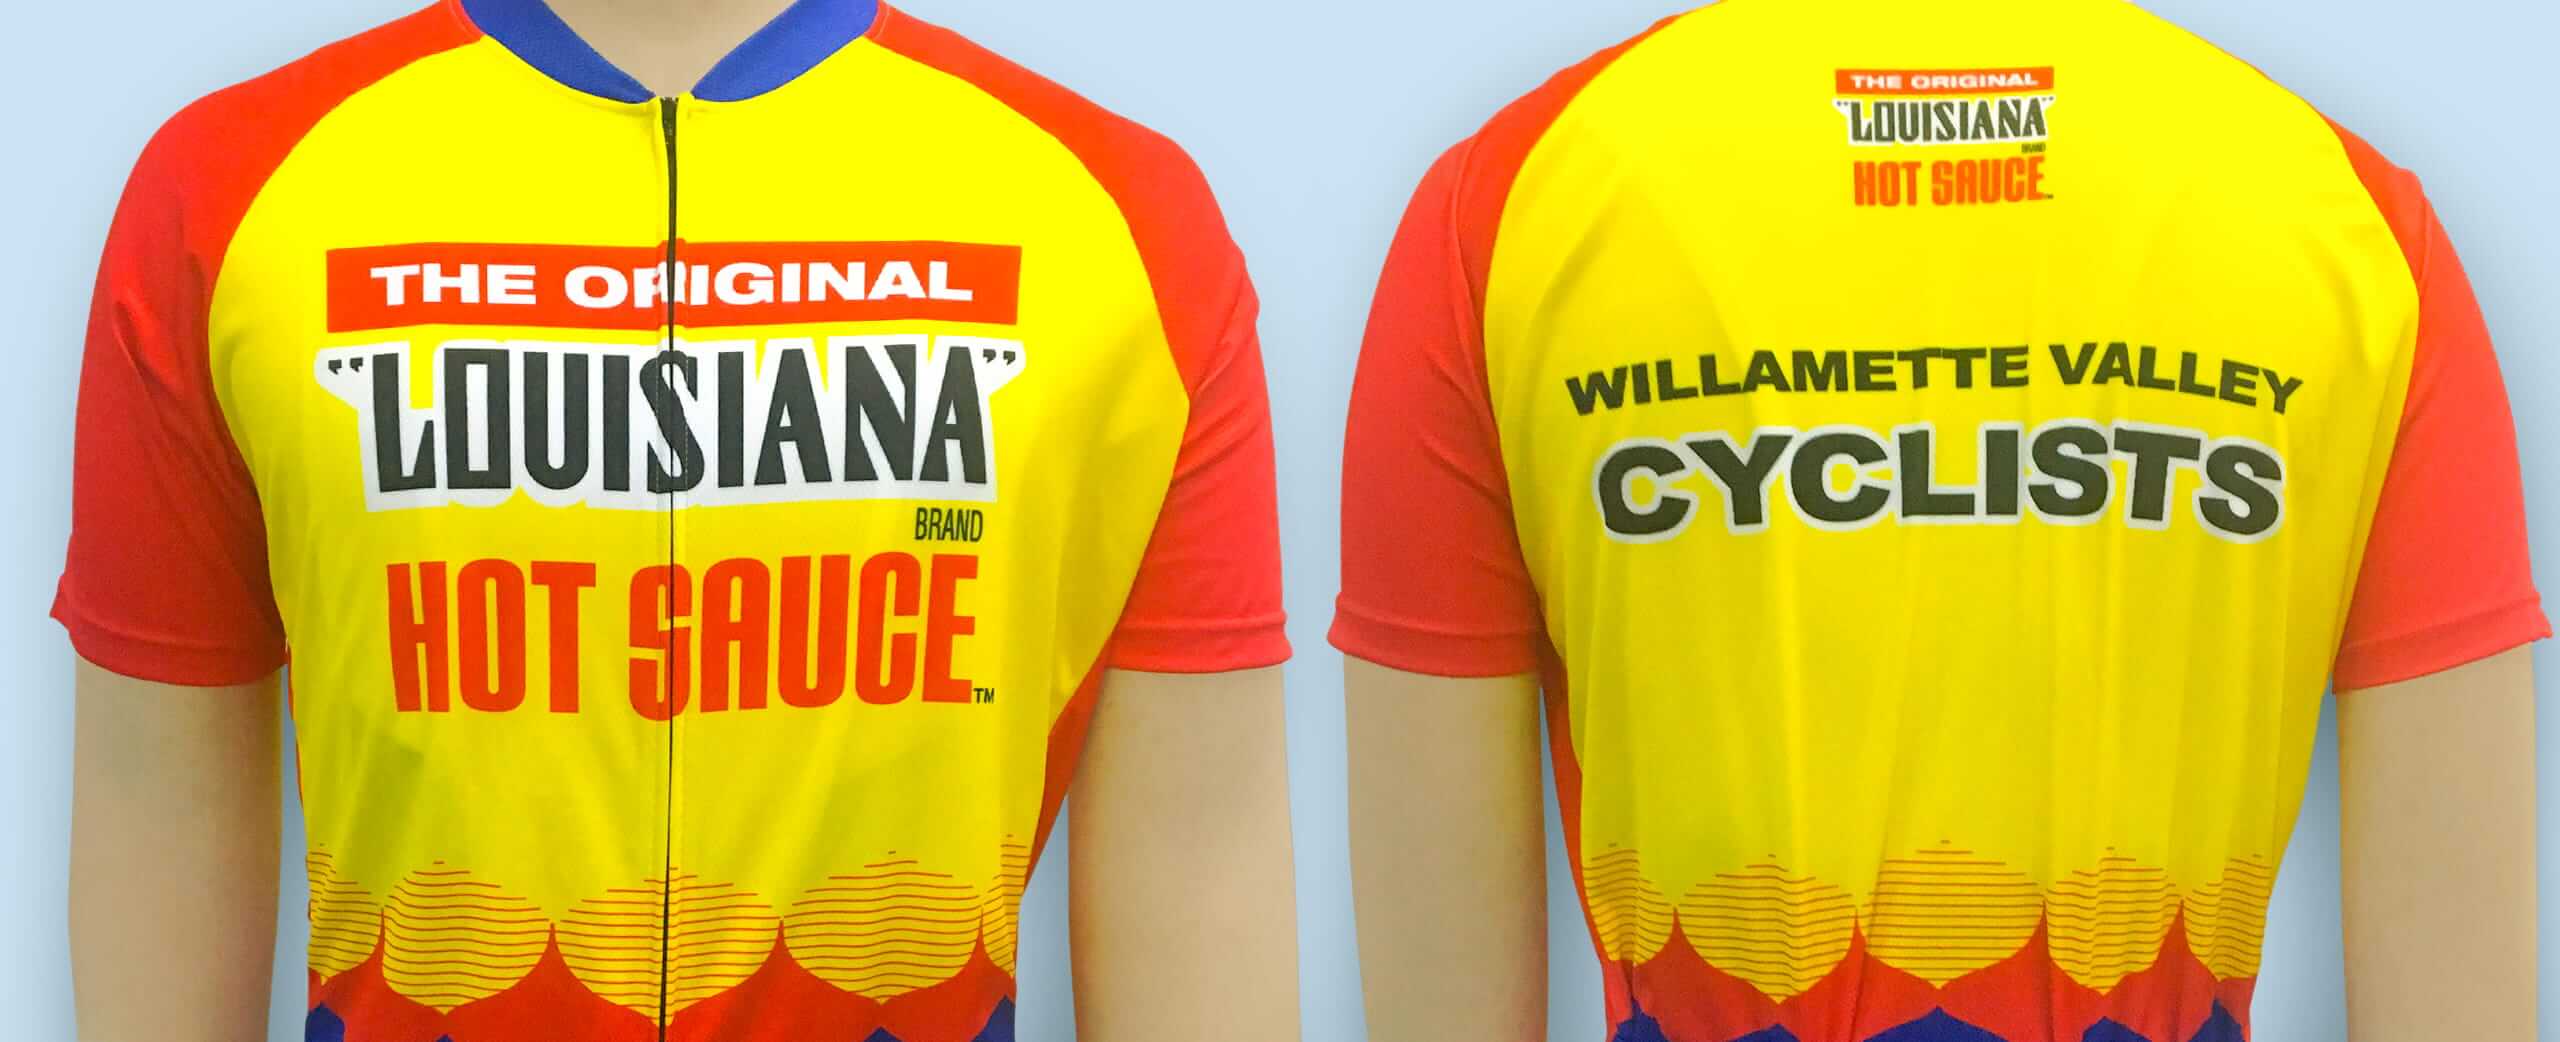 louisiana-hot-sauce-bike-shirts